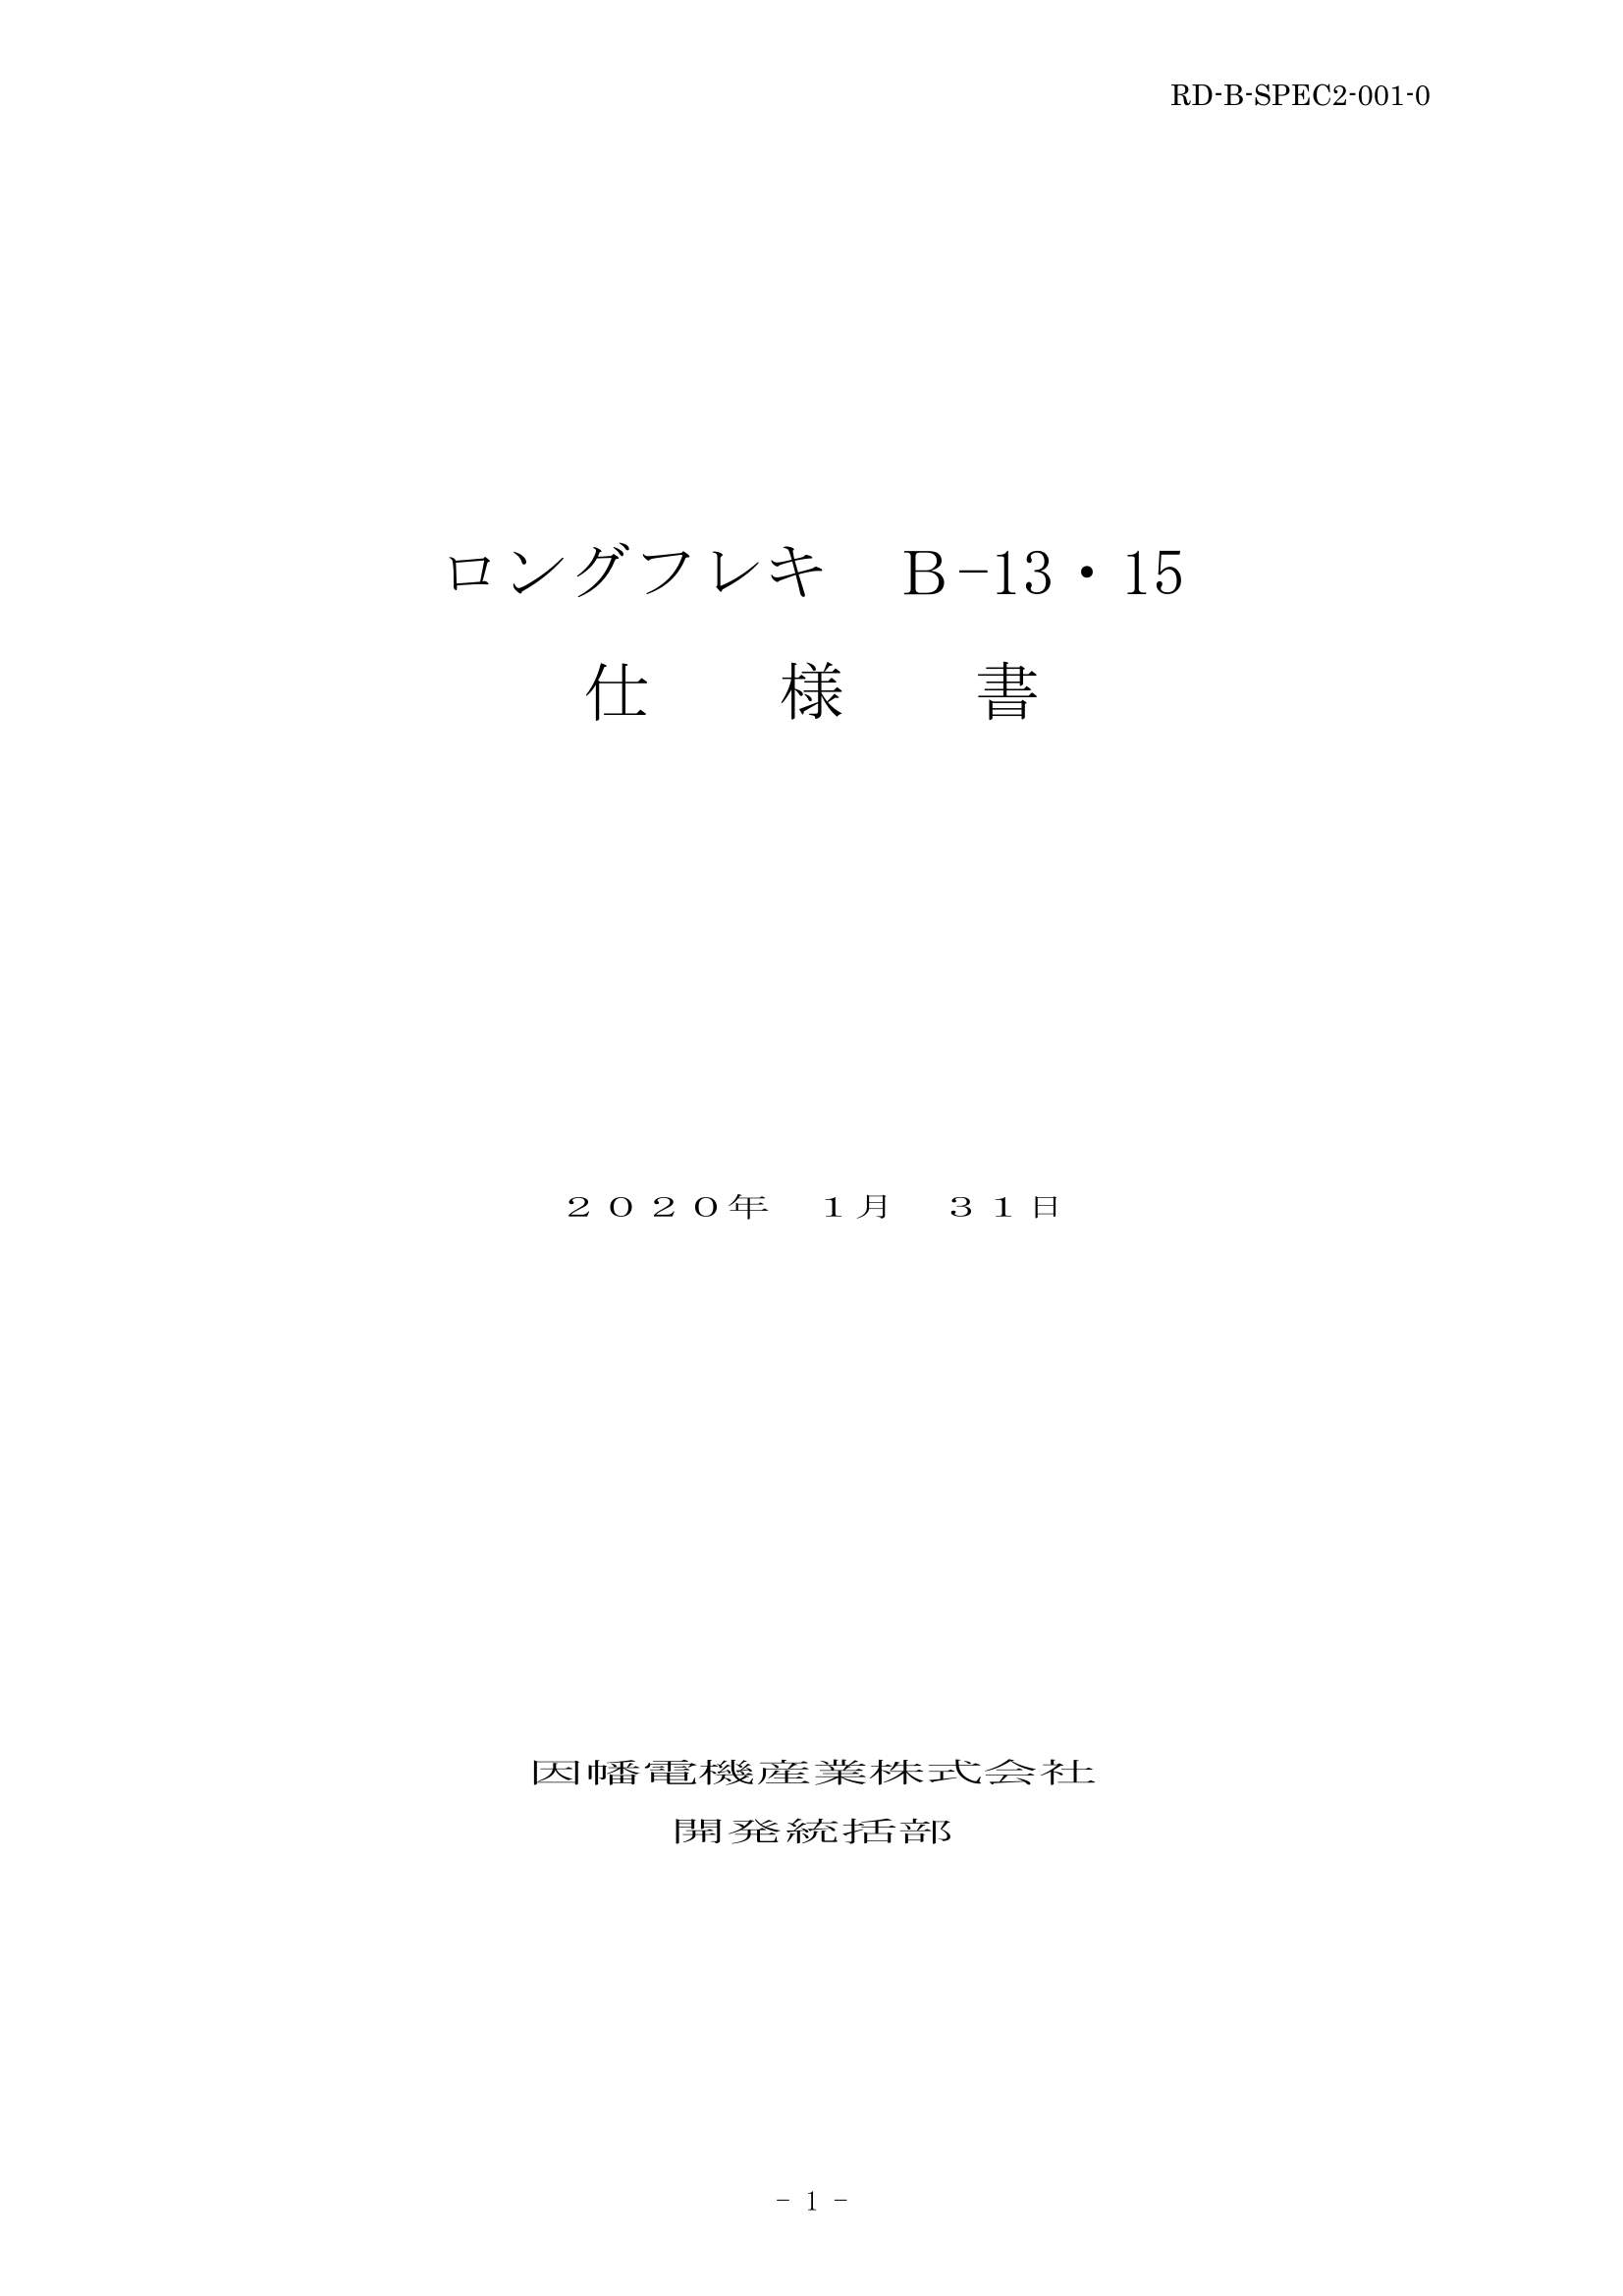 B-13_15_仕様書_20200131.pdf